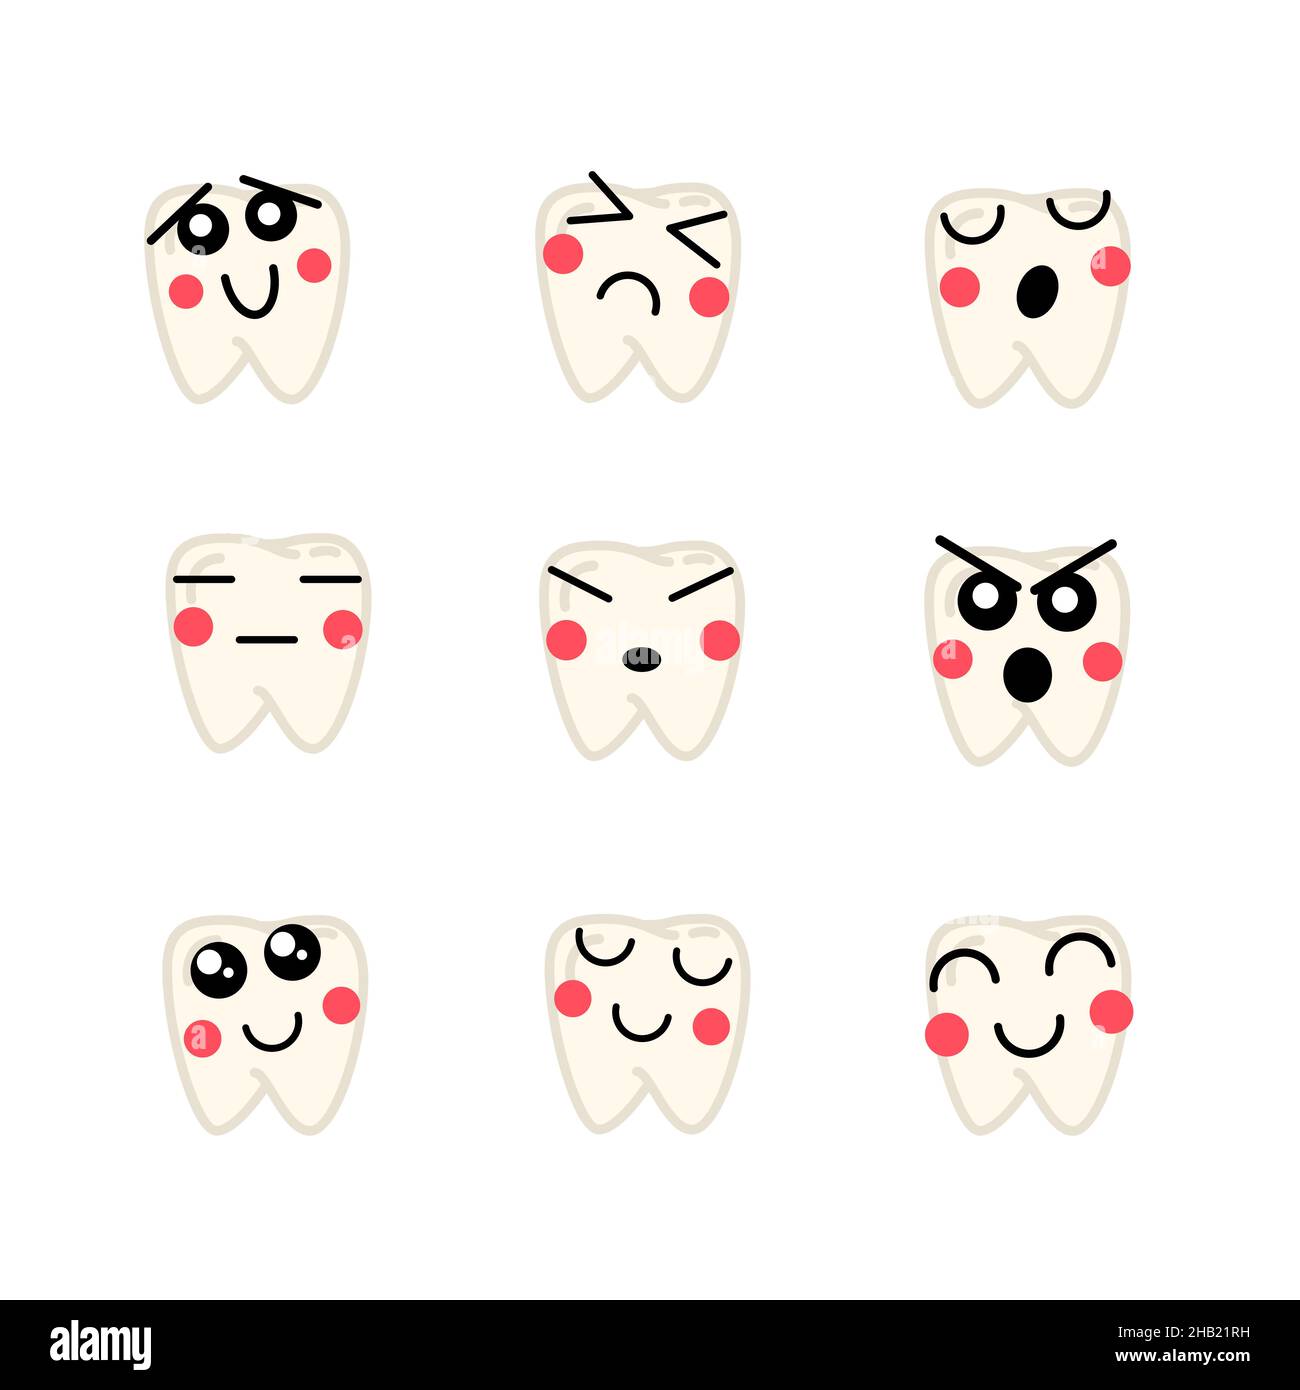 Ensemble de teeths humains lumineux avec des visages mignons, icônes médicales sur blanc Illustration de Vecteur